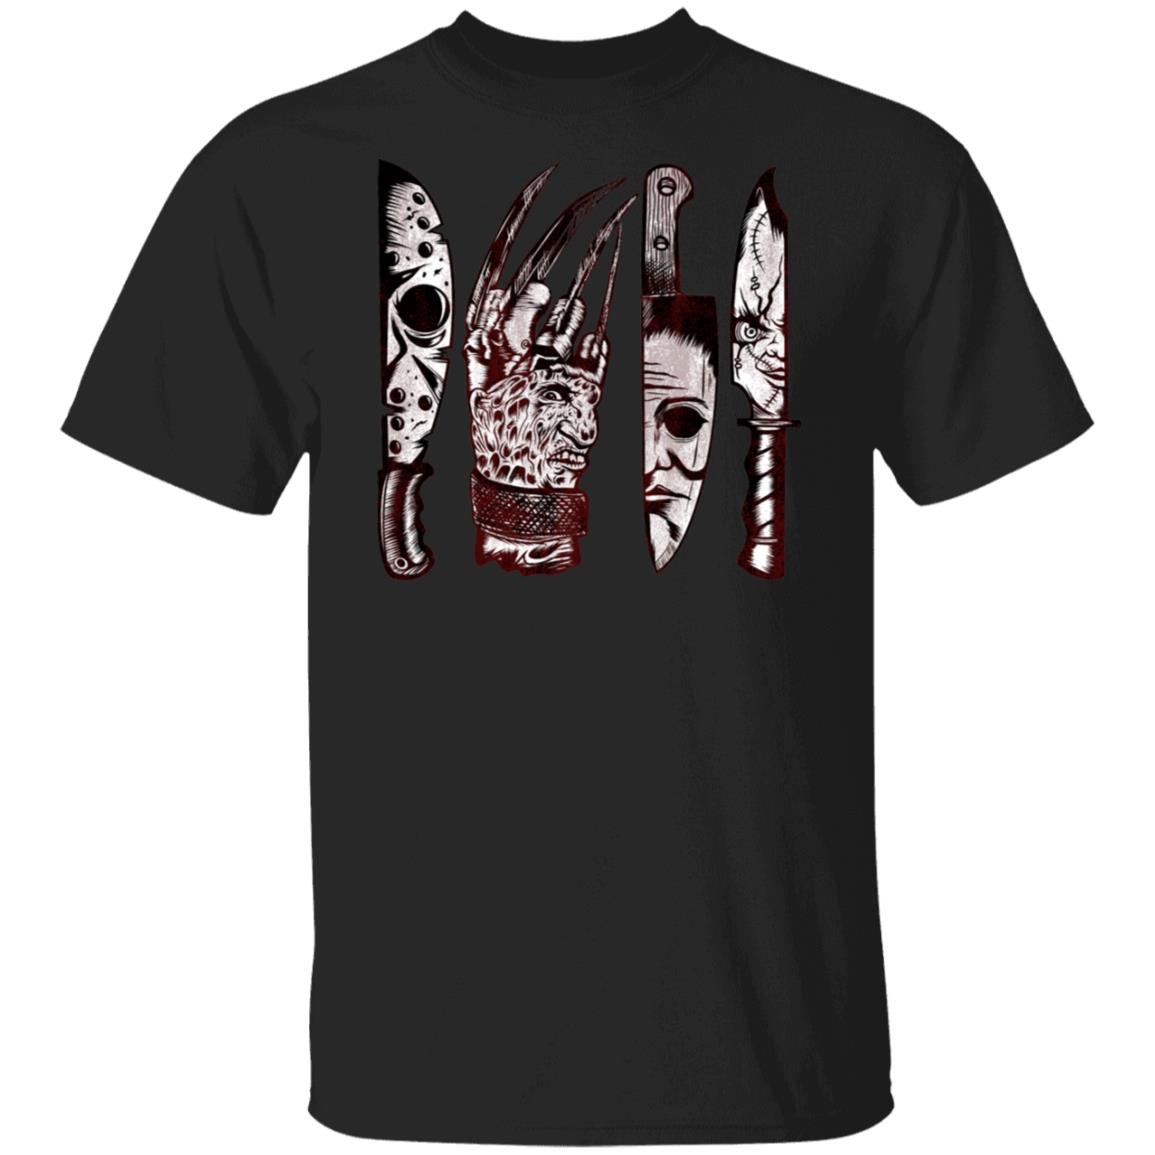 Premium Favorite Horror Movie Shirt or Hoodie